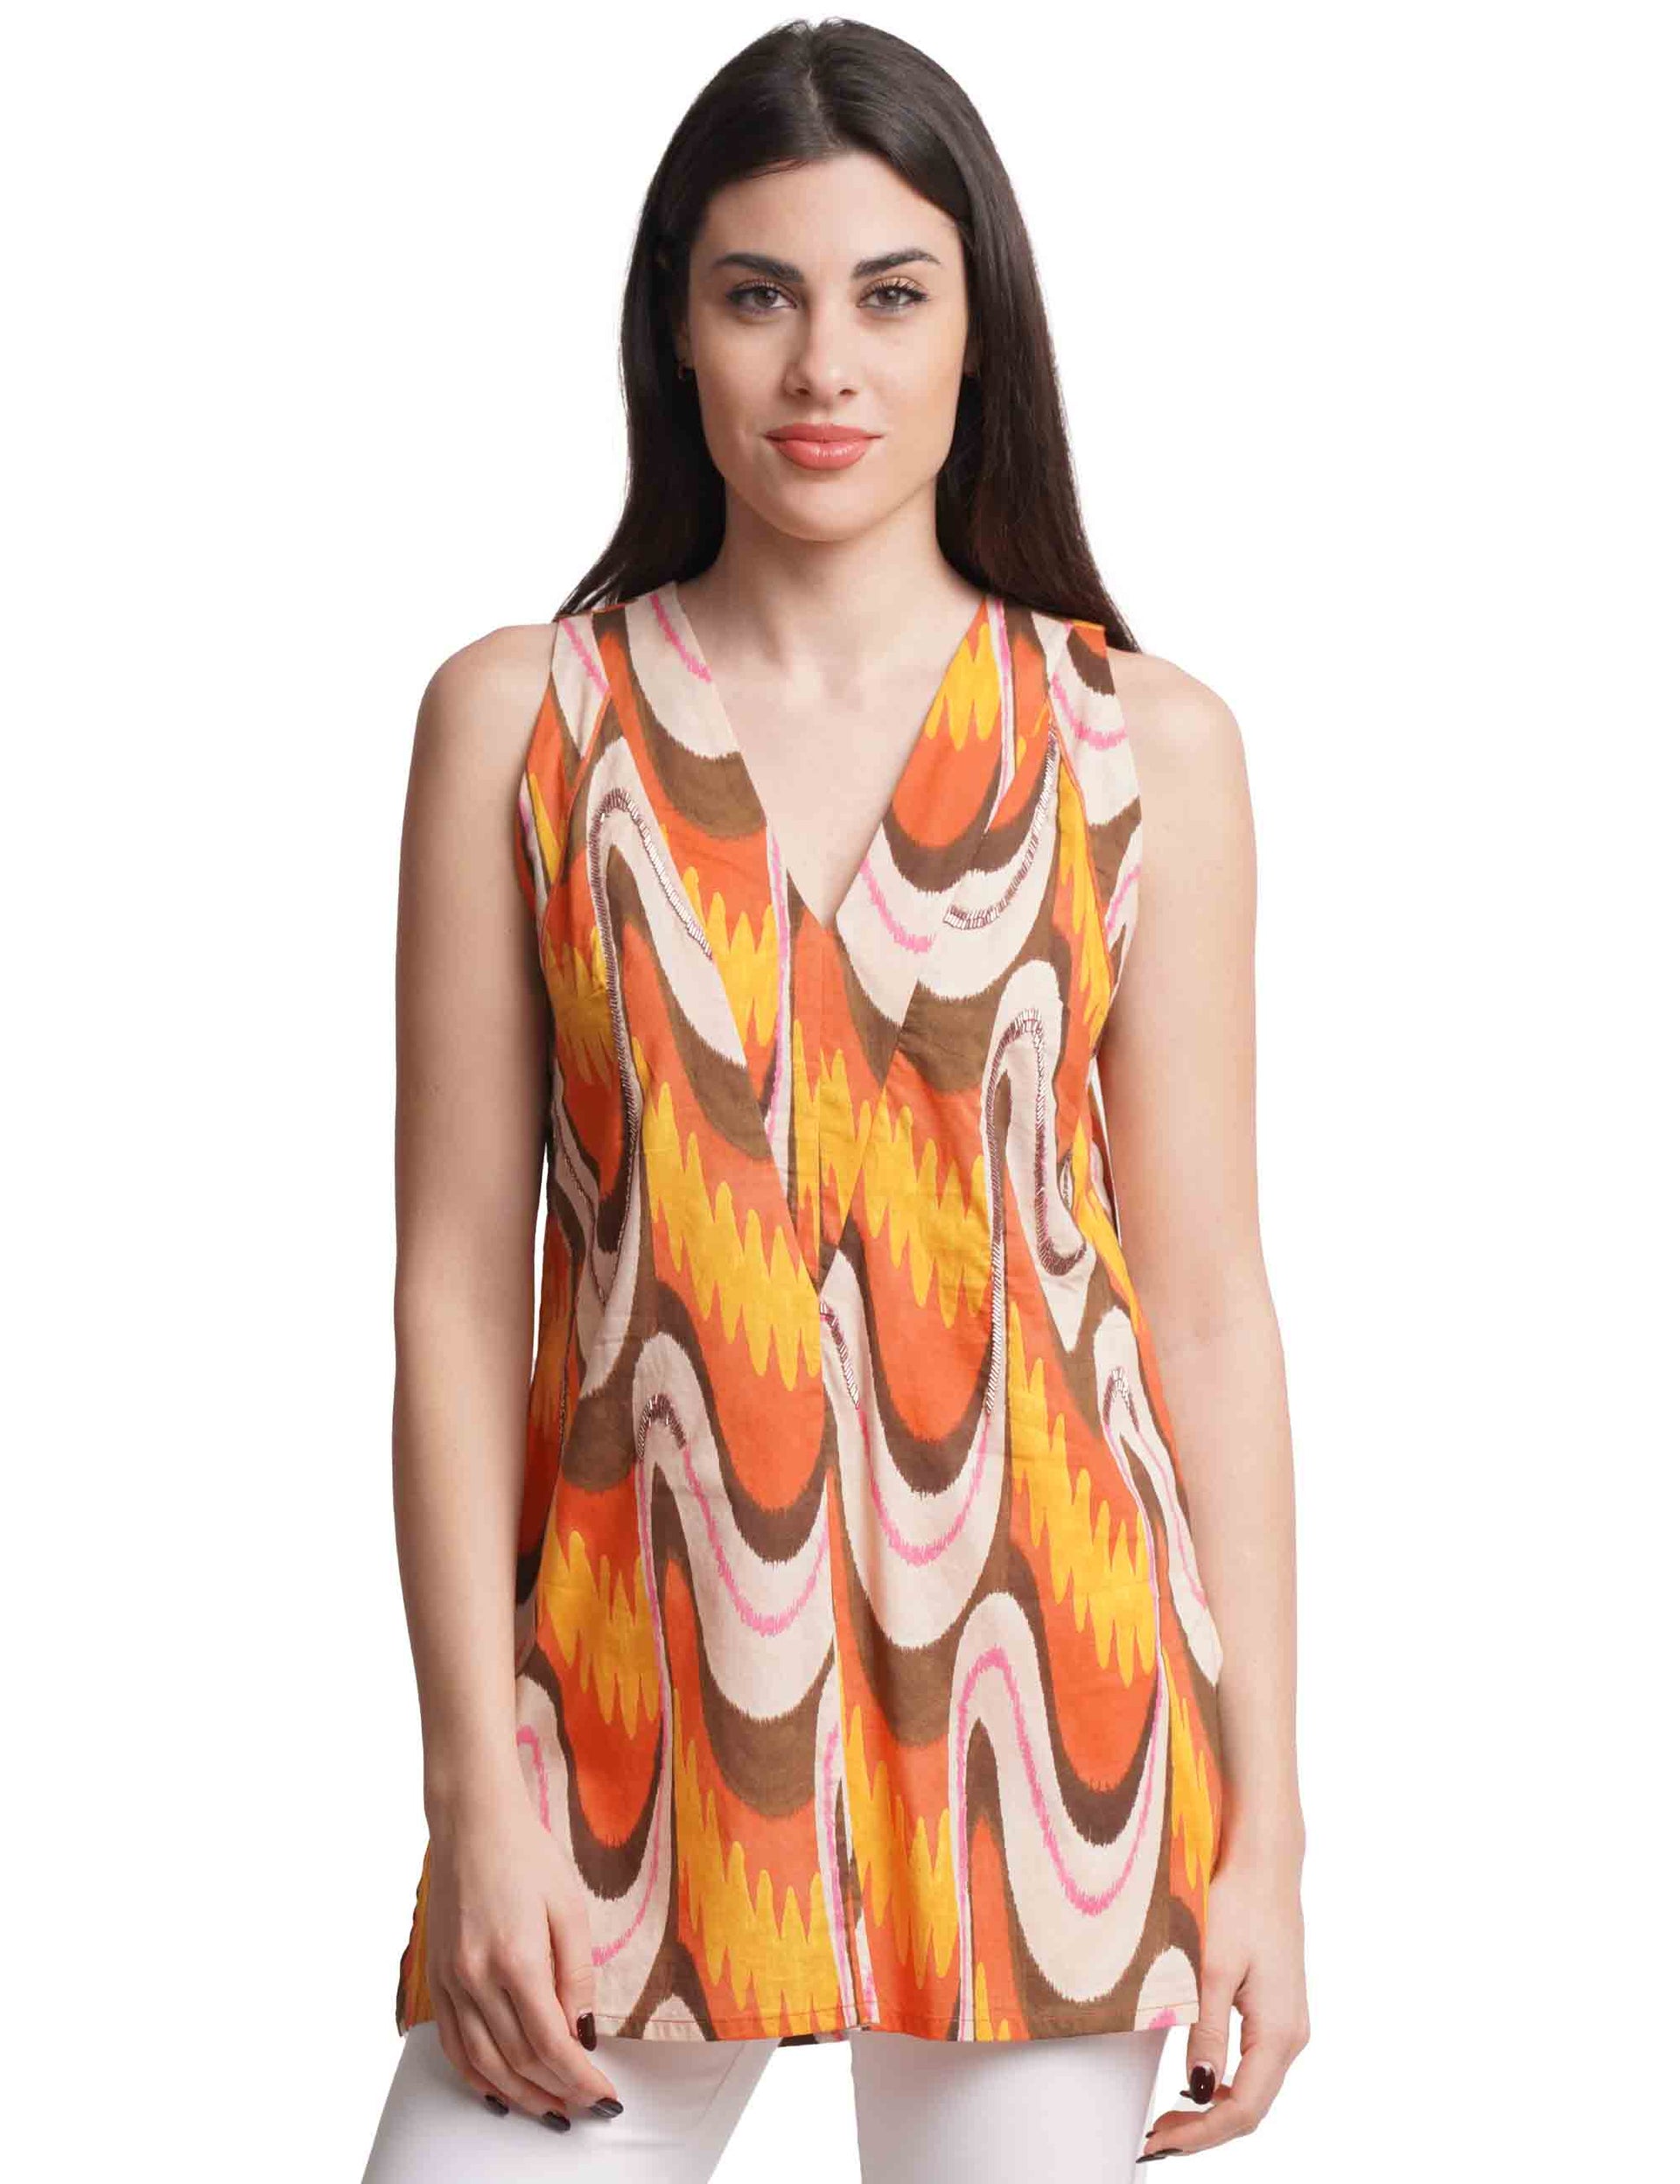 Ikat Wave Muslin women's top in orange patterned cotton